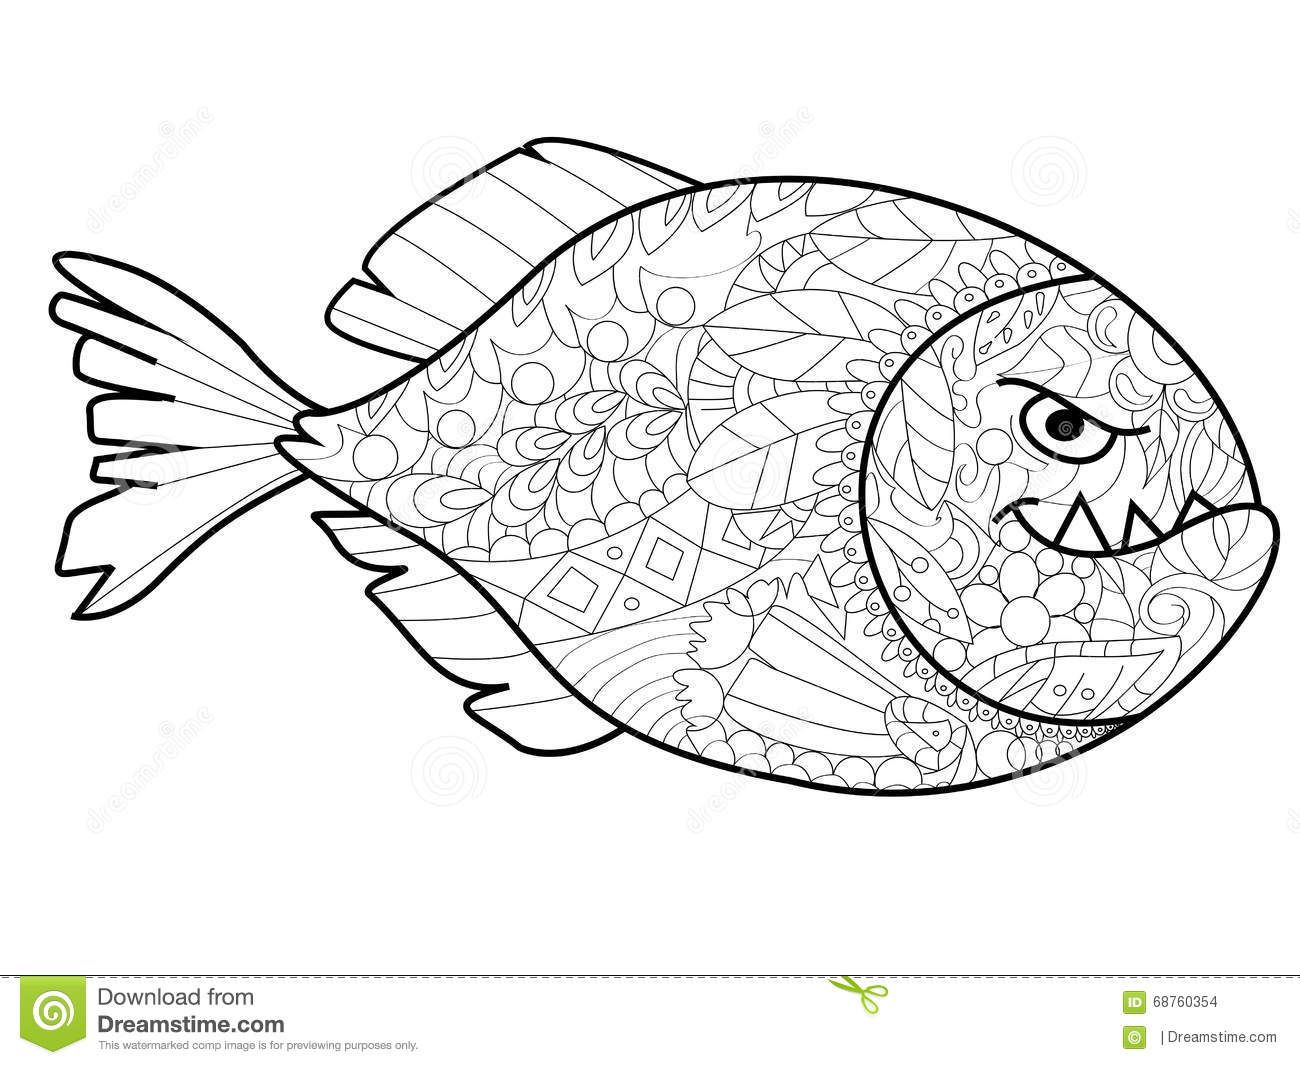 Piranha coloring #9, Download drawings